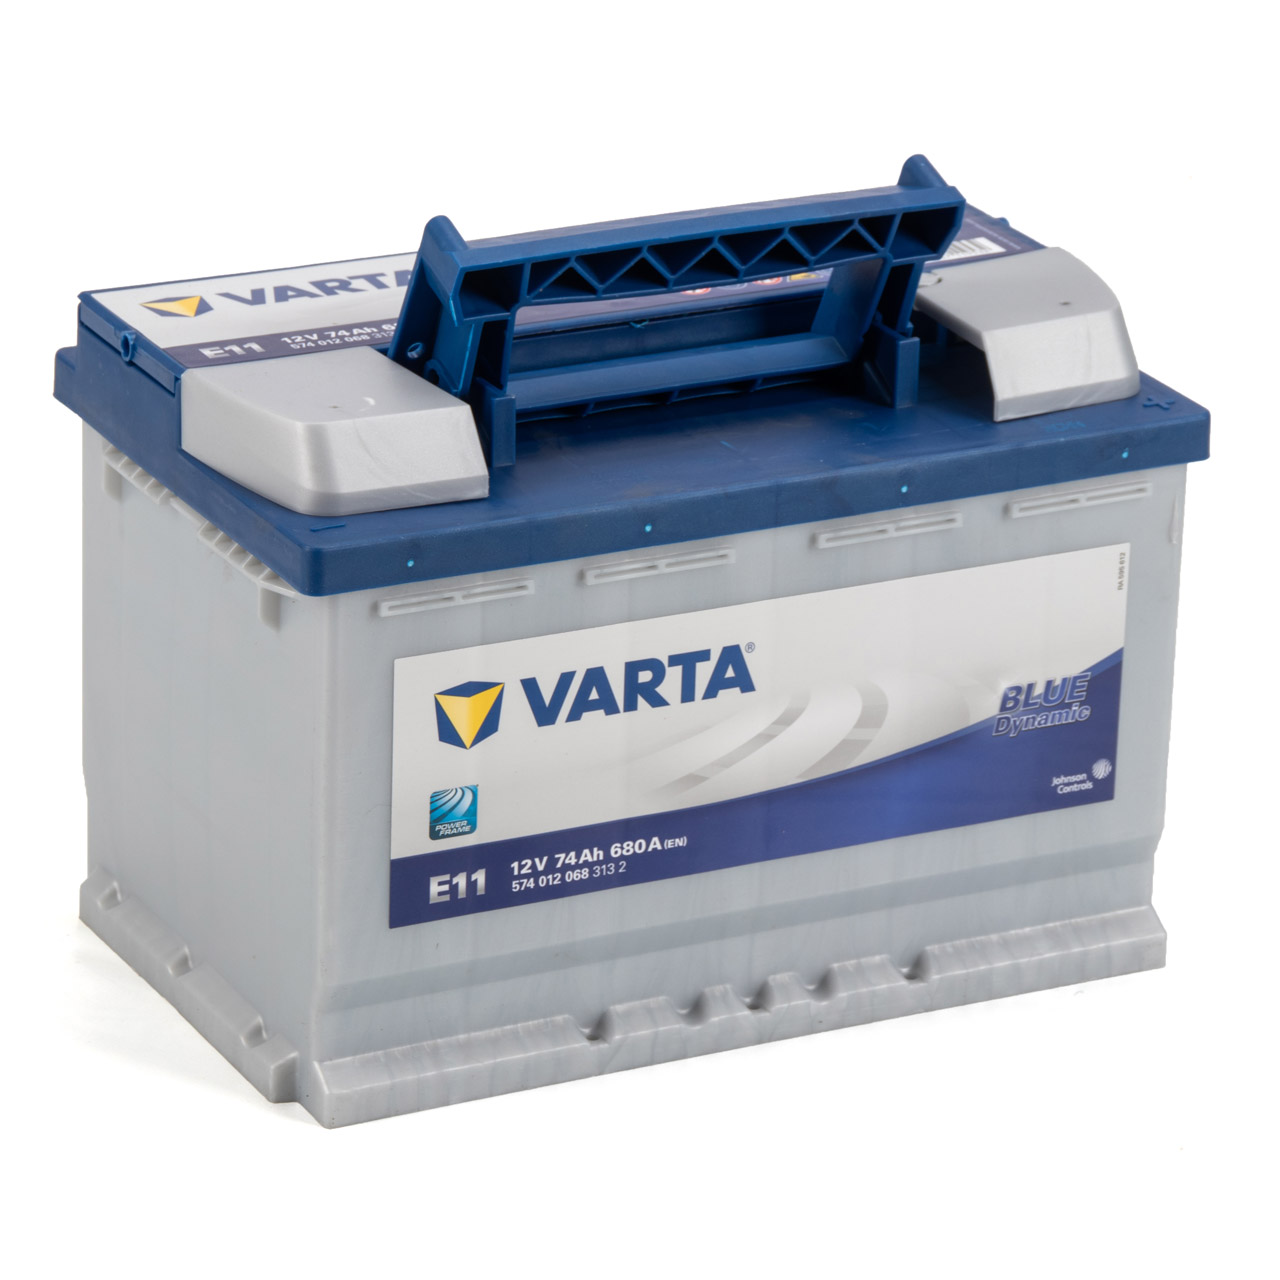 VARTA BLUE dynamic E11 Autobatterie Batterie Starterbatterie 12V 74Ah 680A